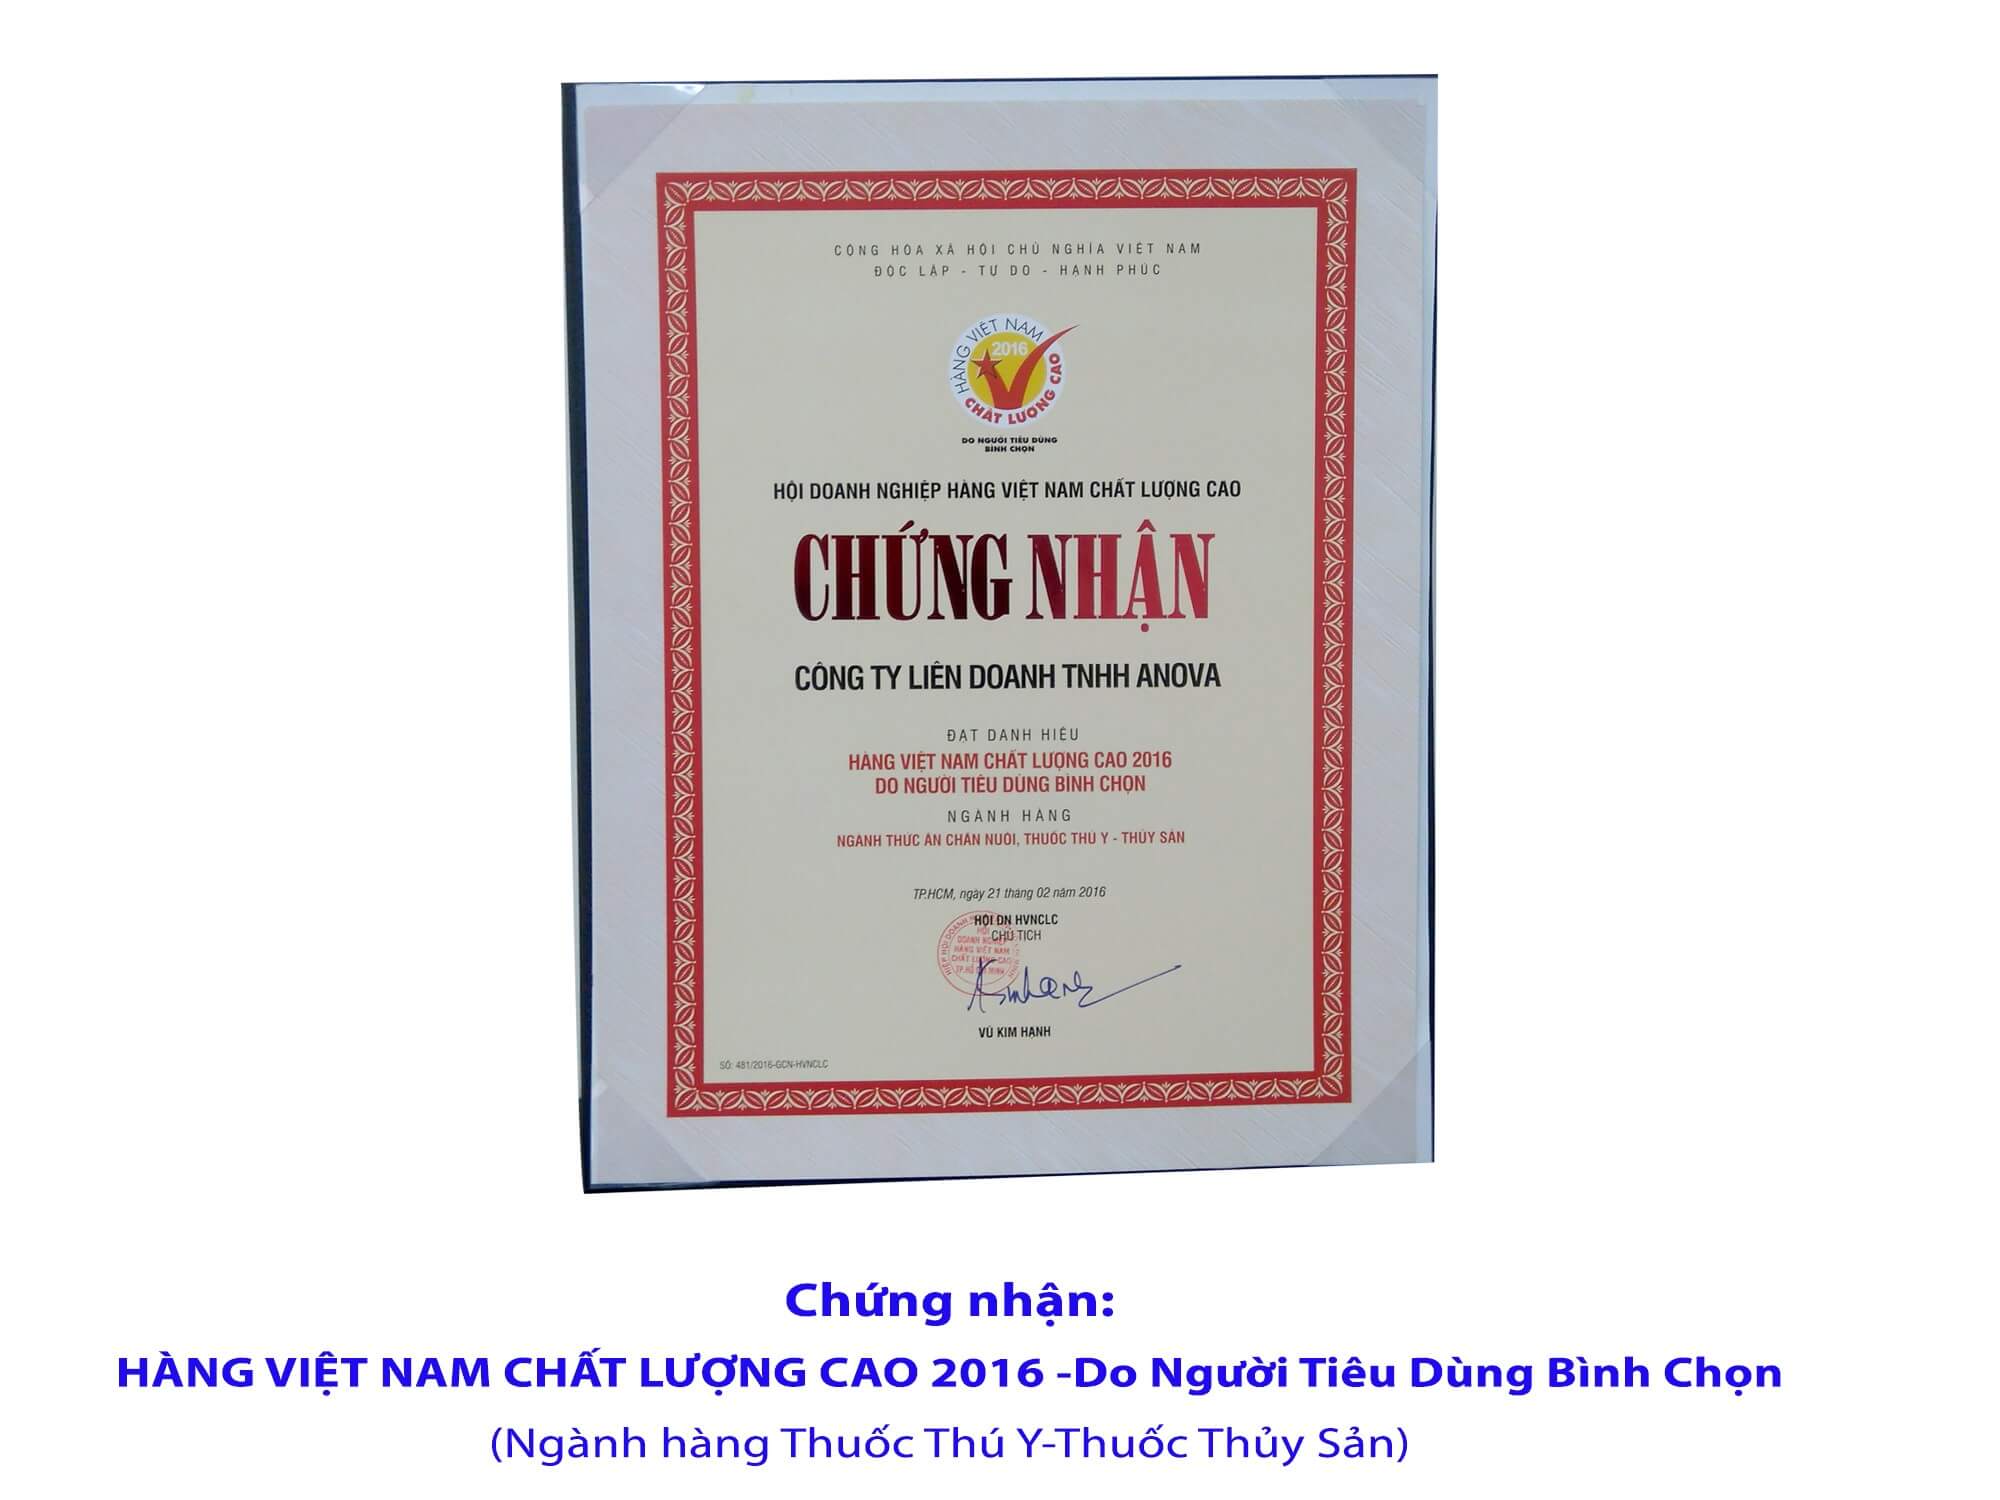 12 năm đạt Chứng nhận đạt danh hiệu “Hàng Việt Nam chất lượng cao do người tiêu dùng bình chọn” qua các năm 2005,  2006, 2007, 2009, 2010, 2011, 2012, 2013 ,2014, 2015, 2016 và 2017 do Báo Thế Giới Tiếp Thị tổ chức